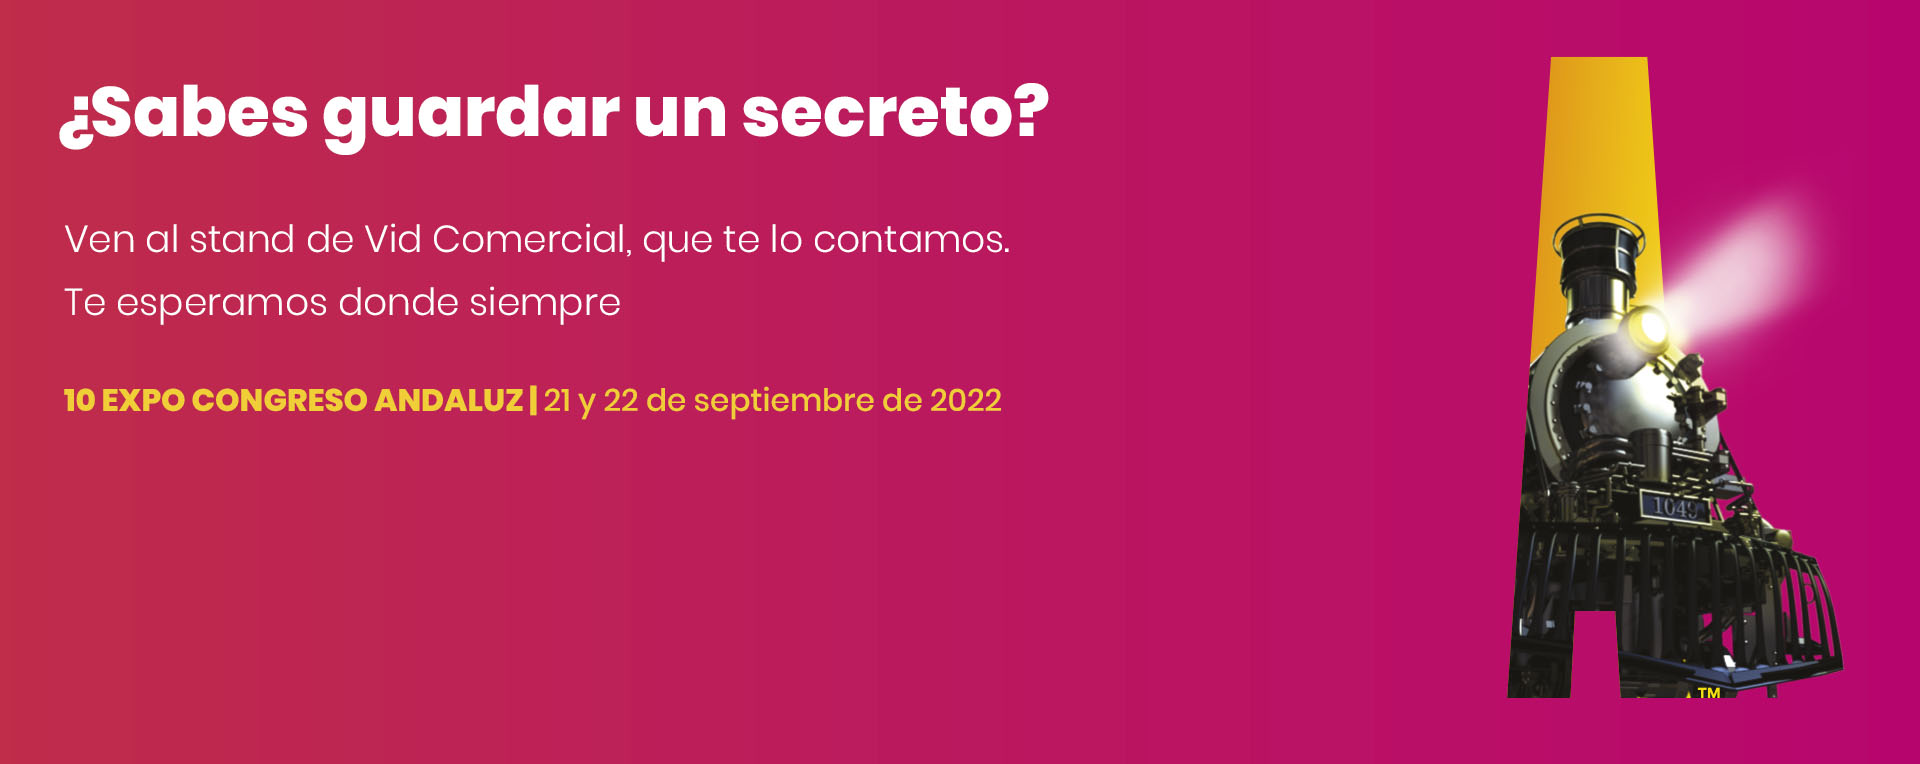 2022.09 expoconfreso andaluz de juego (banner web)